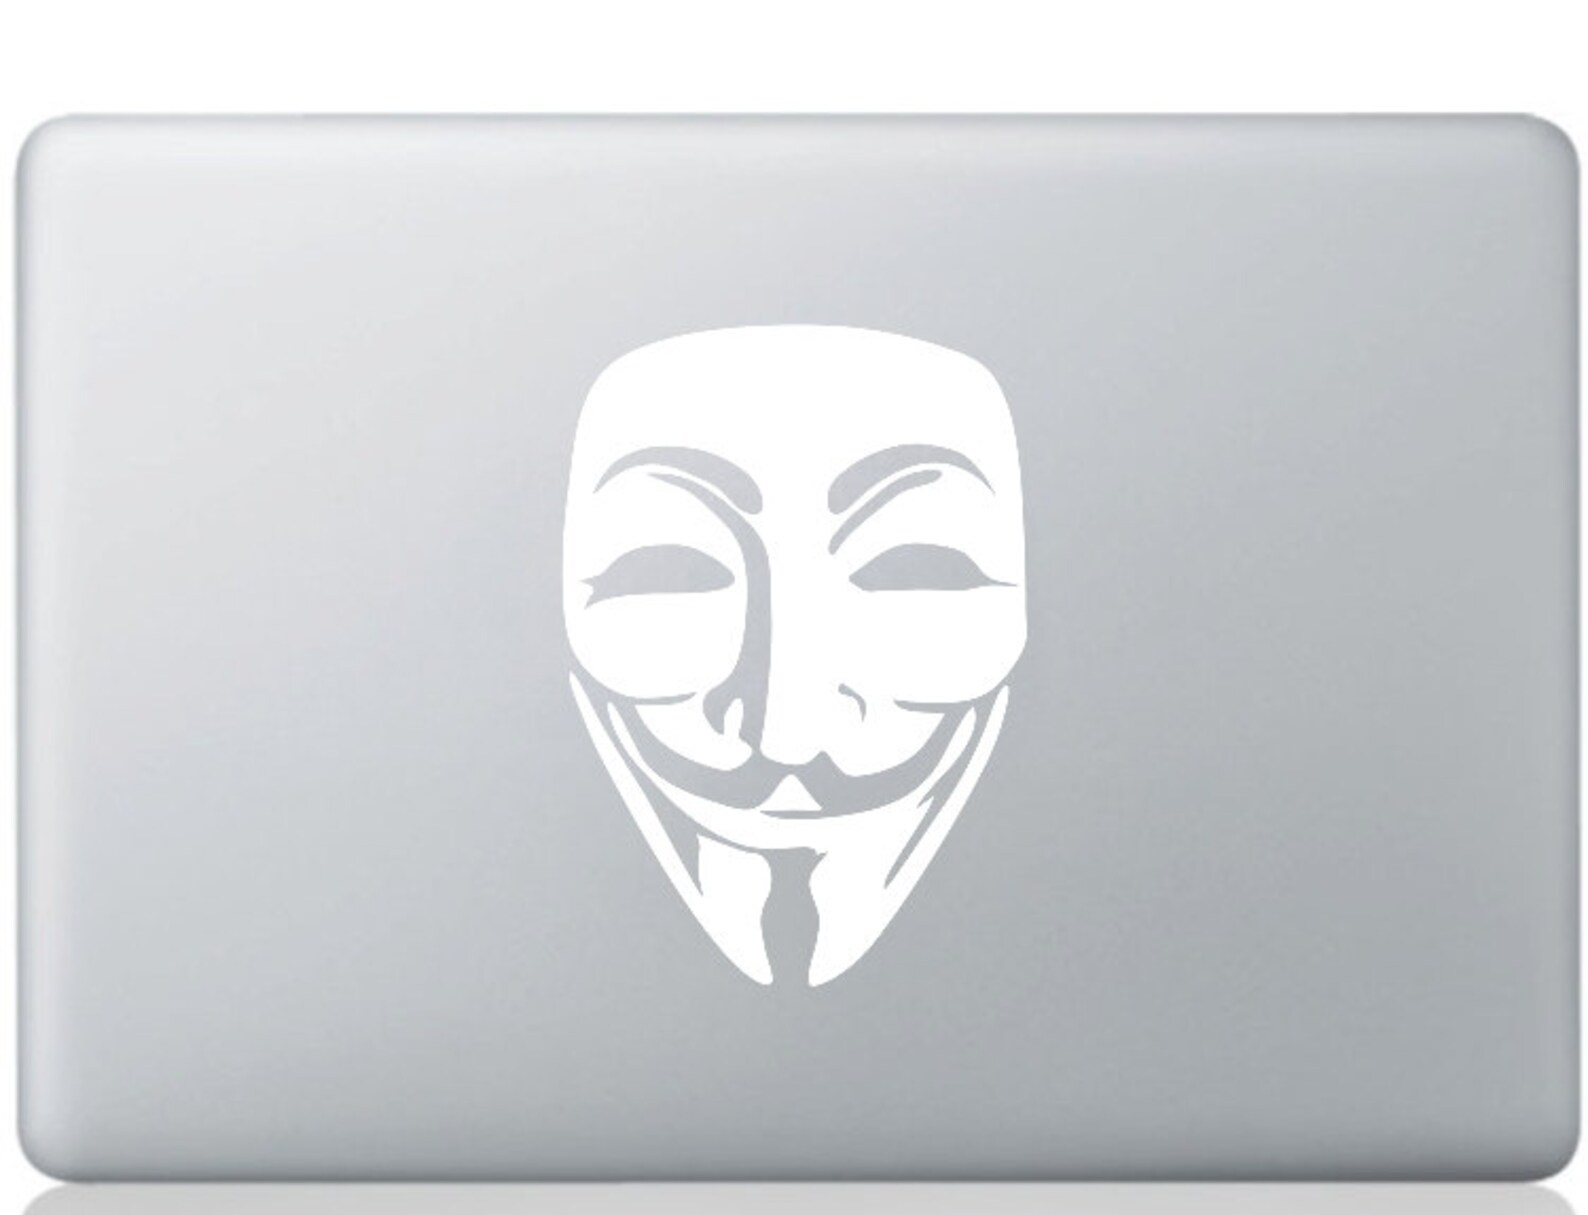 Маска 5 стикеры. Стикеры анонимус ВК. Обои макка для ноутбука. Подголовники для авто с логотипом маски Анонимуса. Уютненько Стикеры маска.